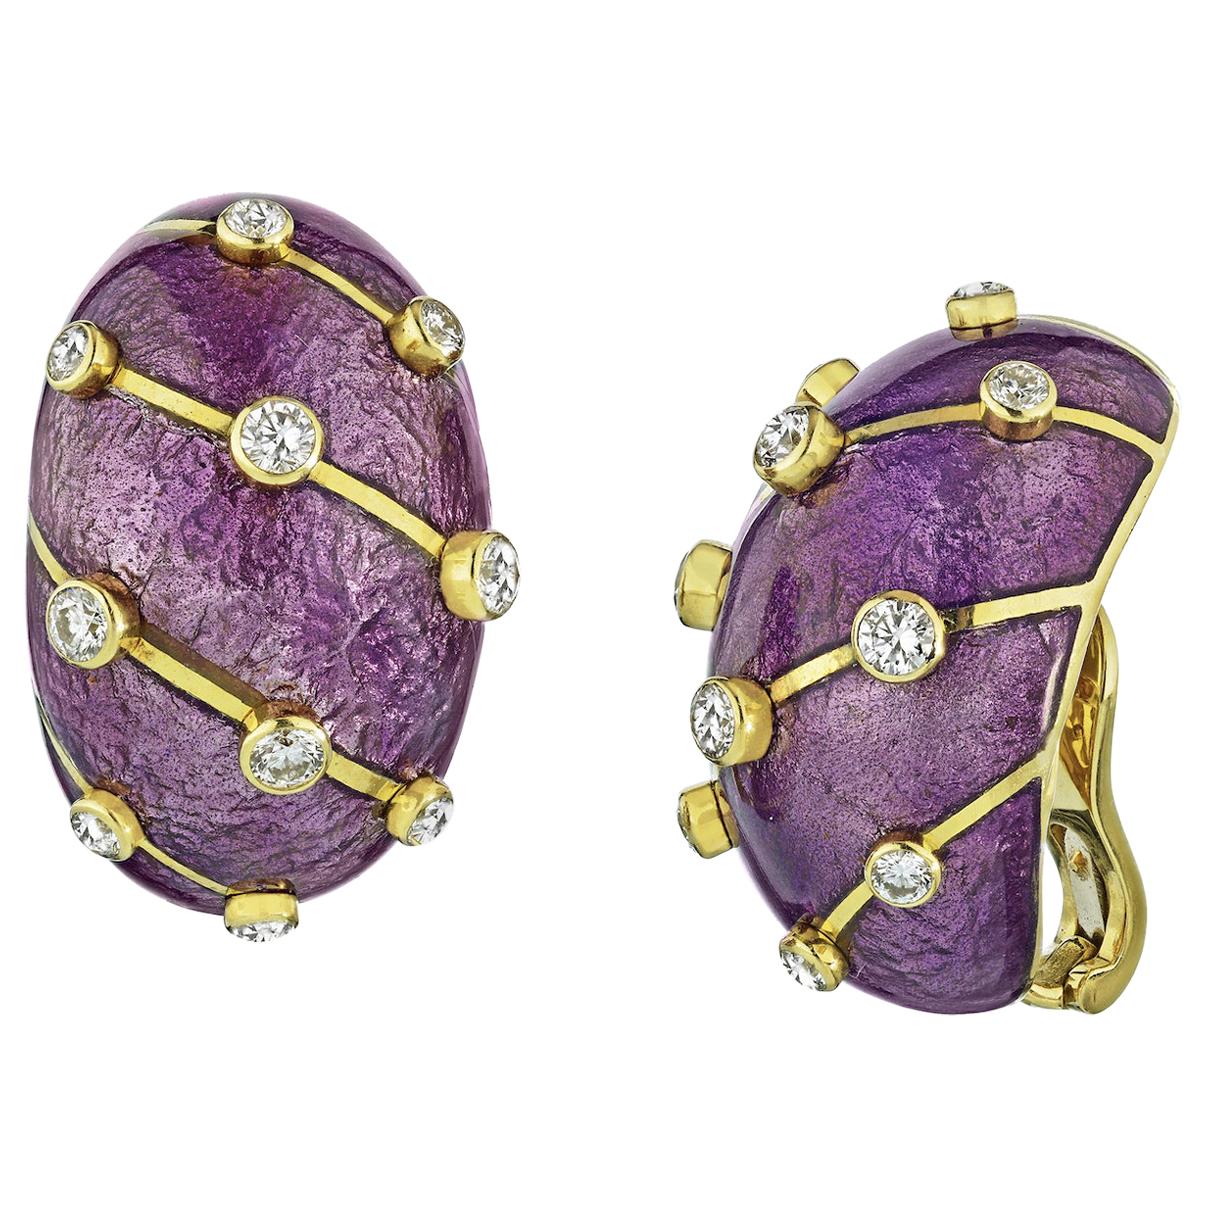 Tiffany & Co. Purple Enamel and Diamond Banana Earclips Earrings